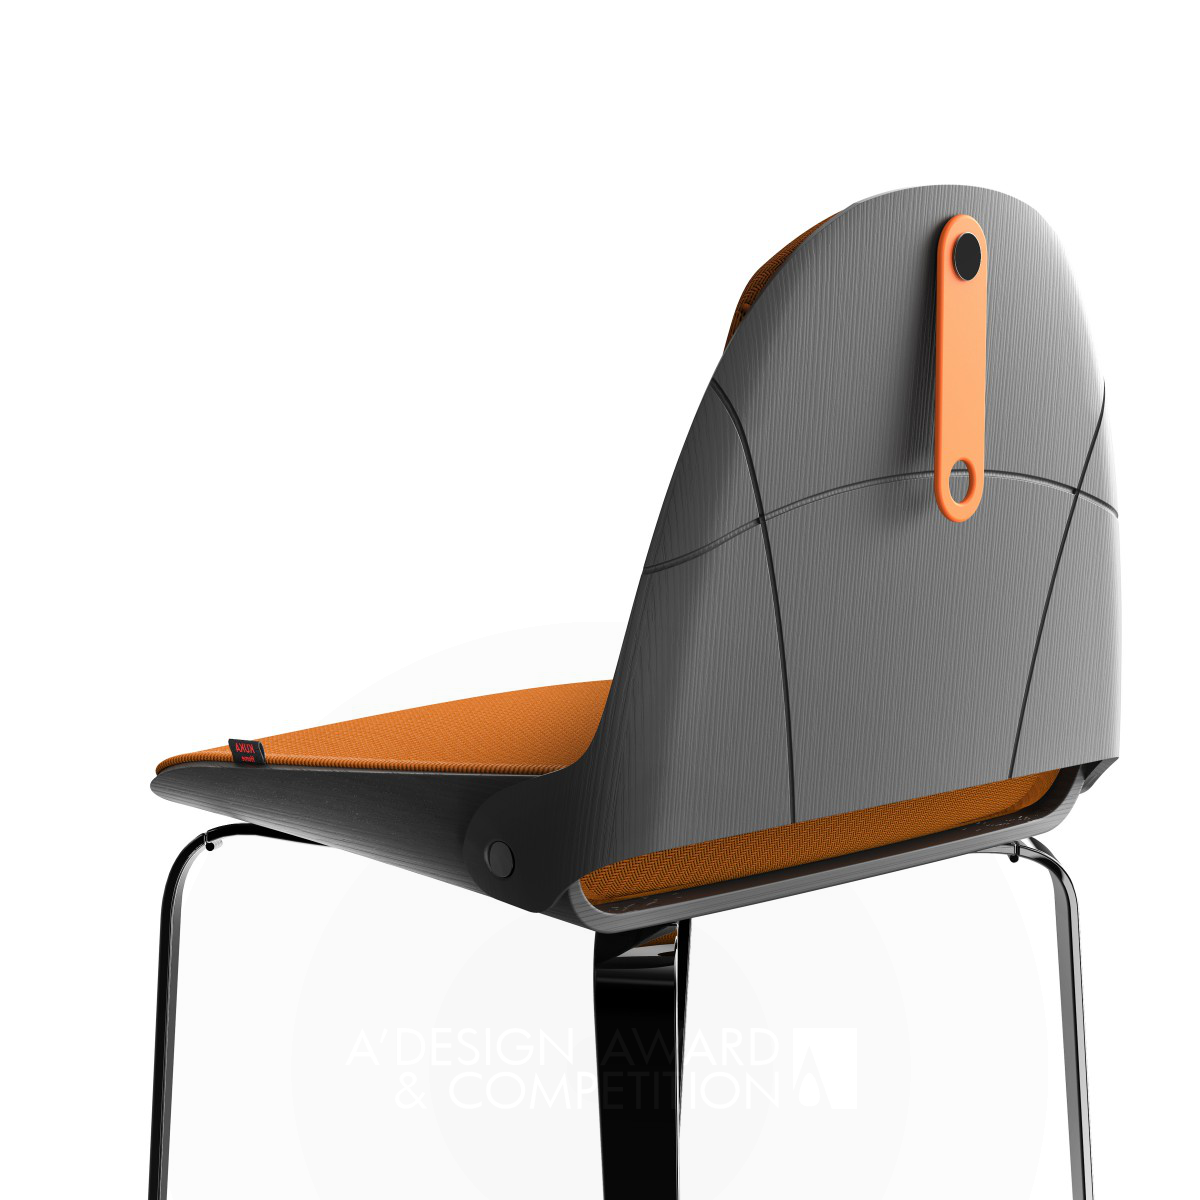 Lu: Uma Cadeira Inovadora e Portátil